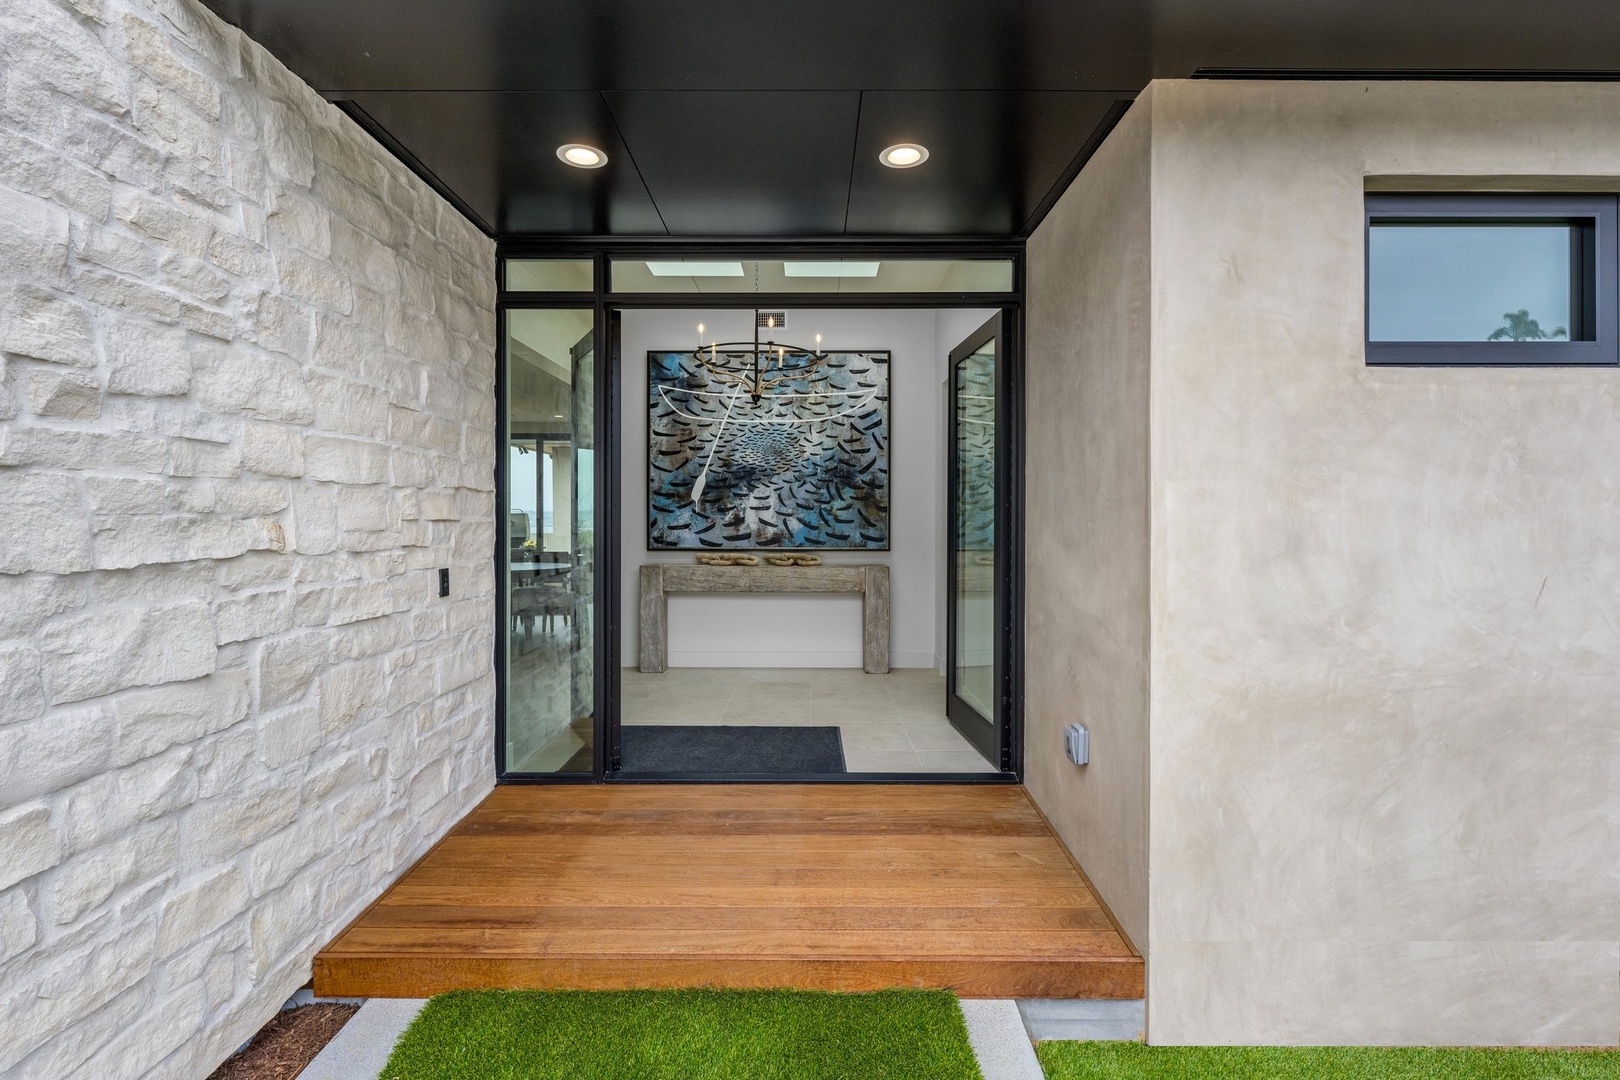 Contemporary designed home